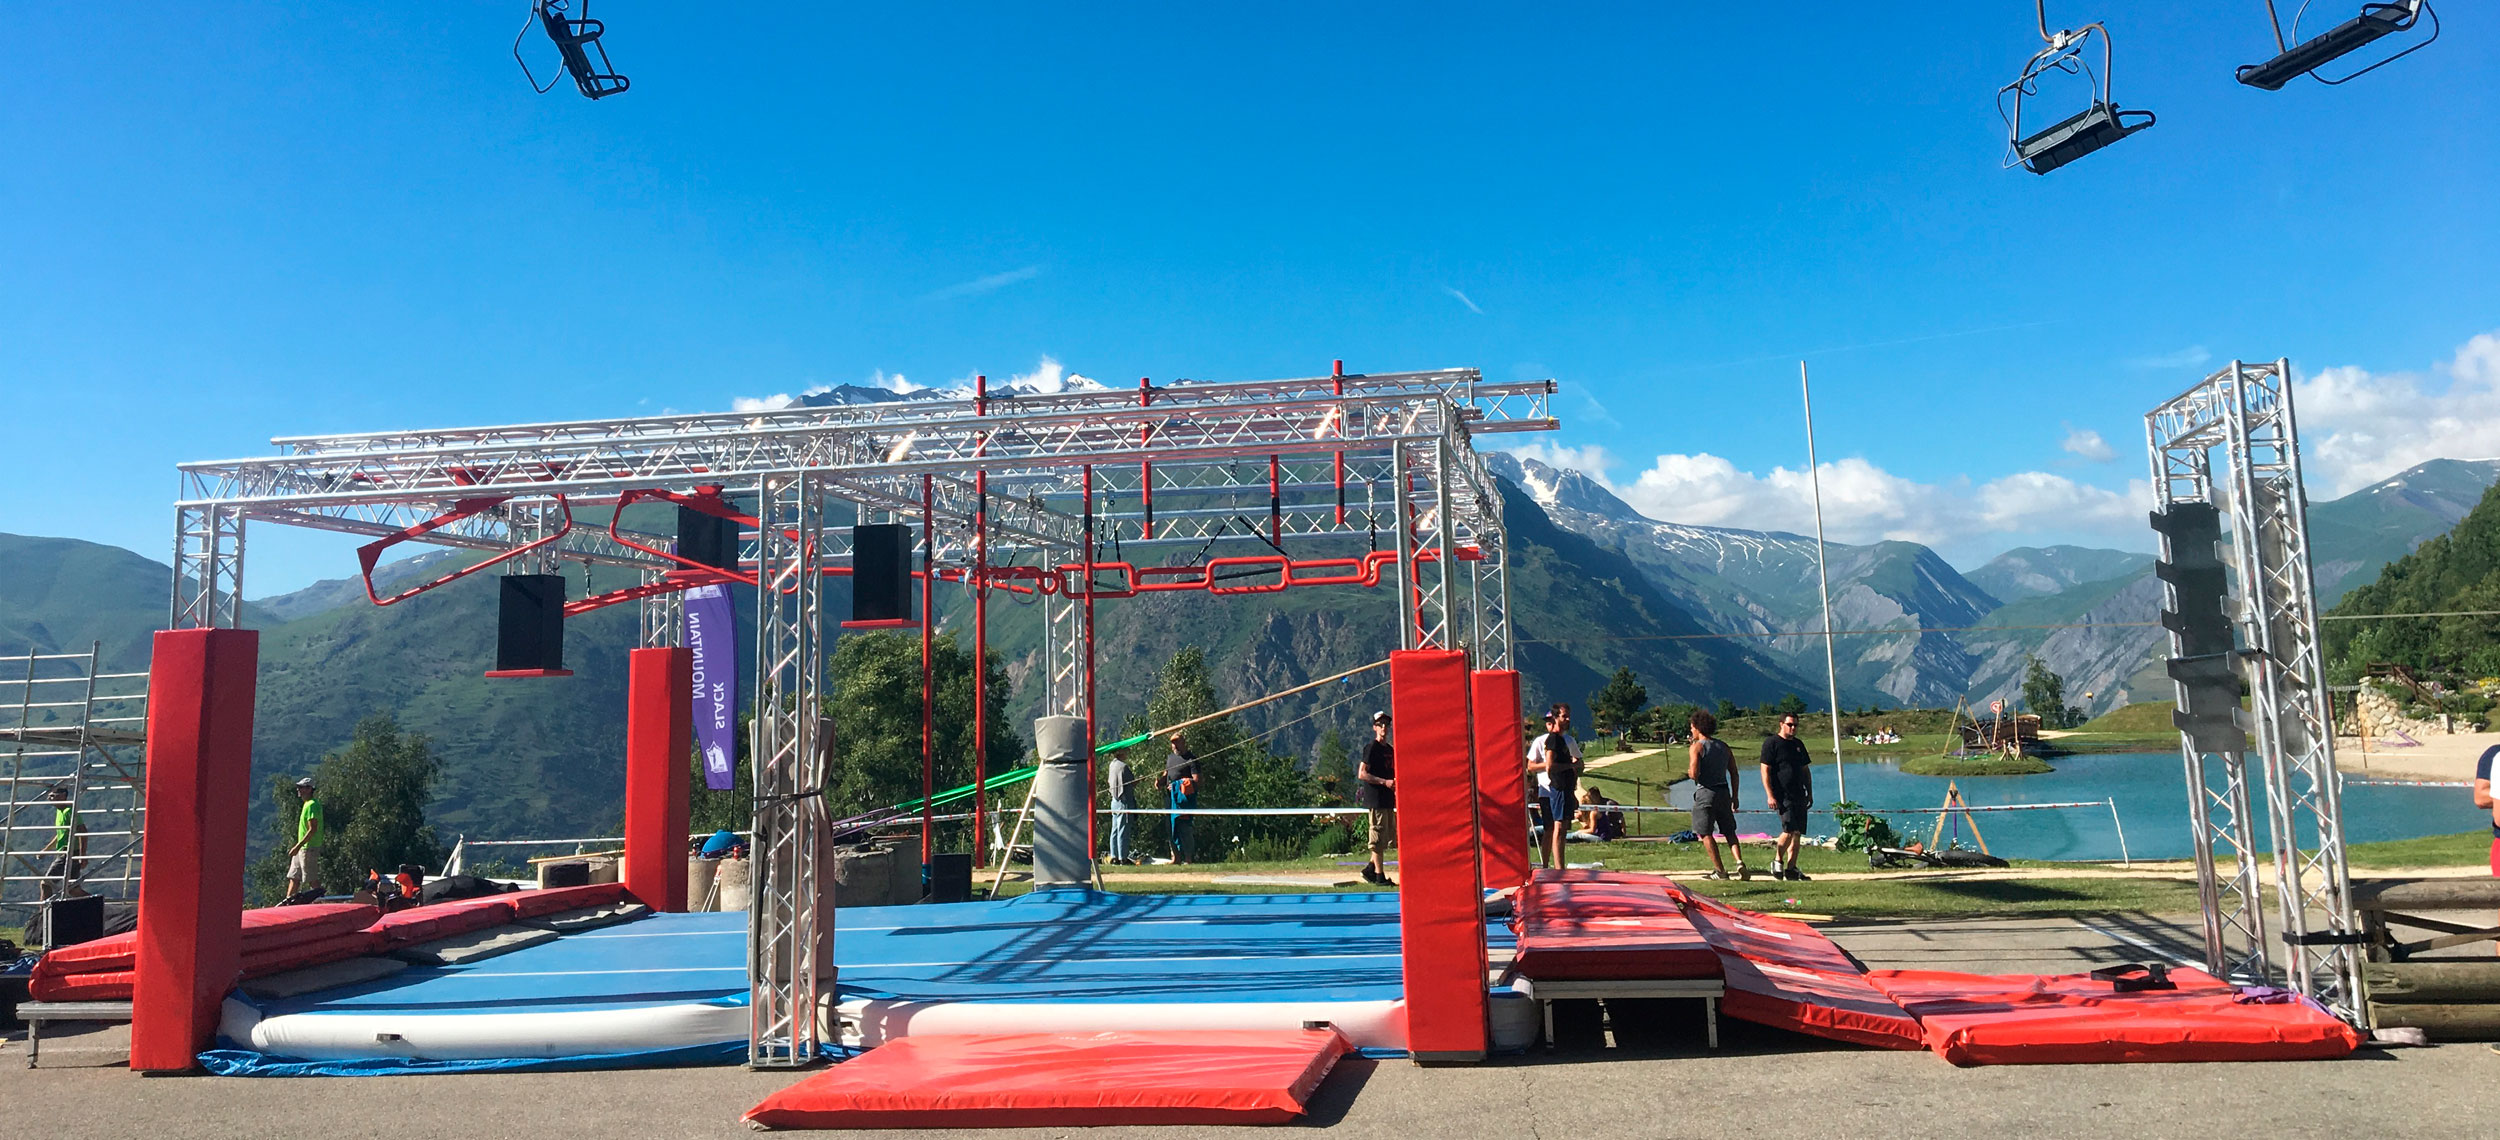 Les 2 Alpes Outdoor Festival